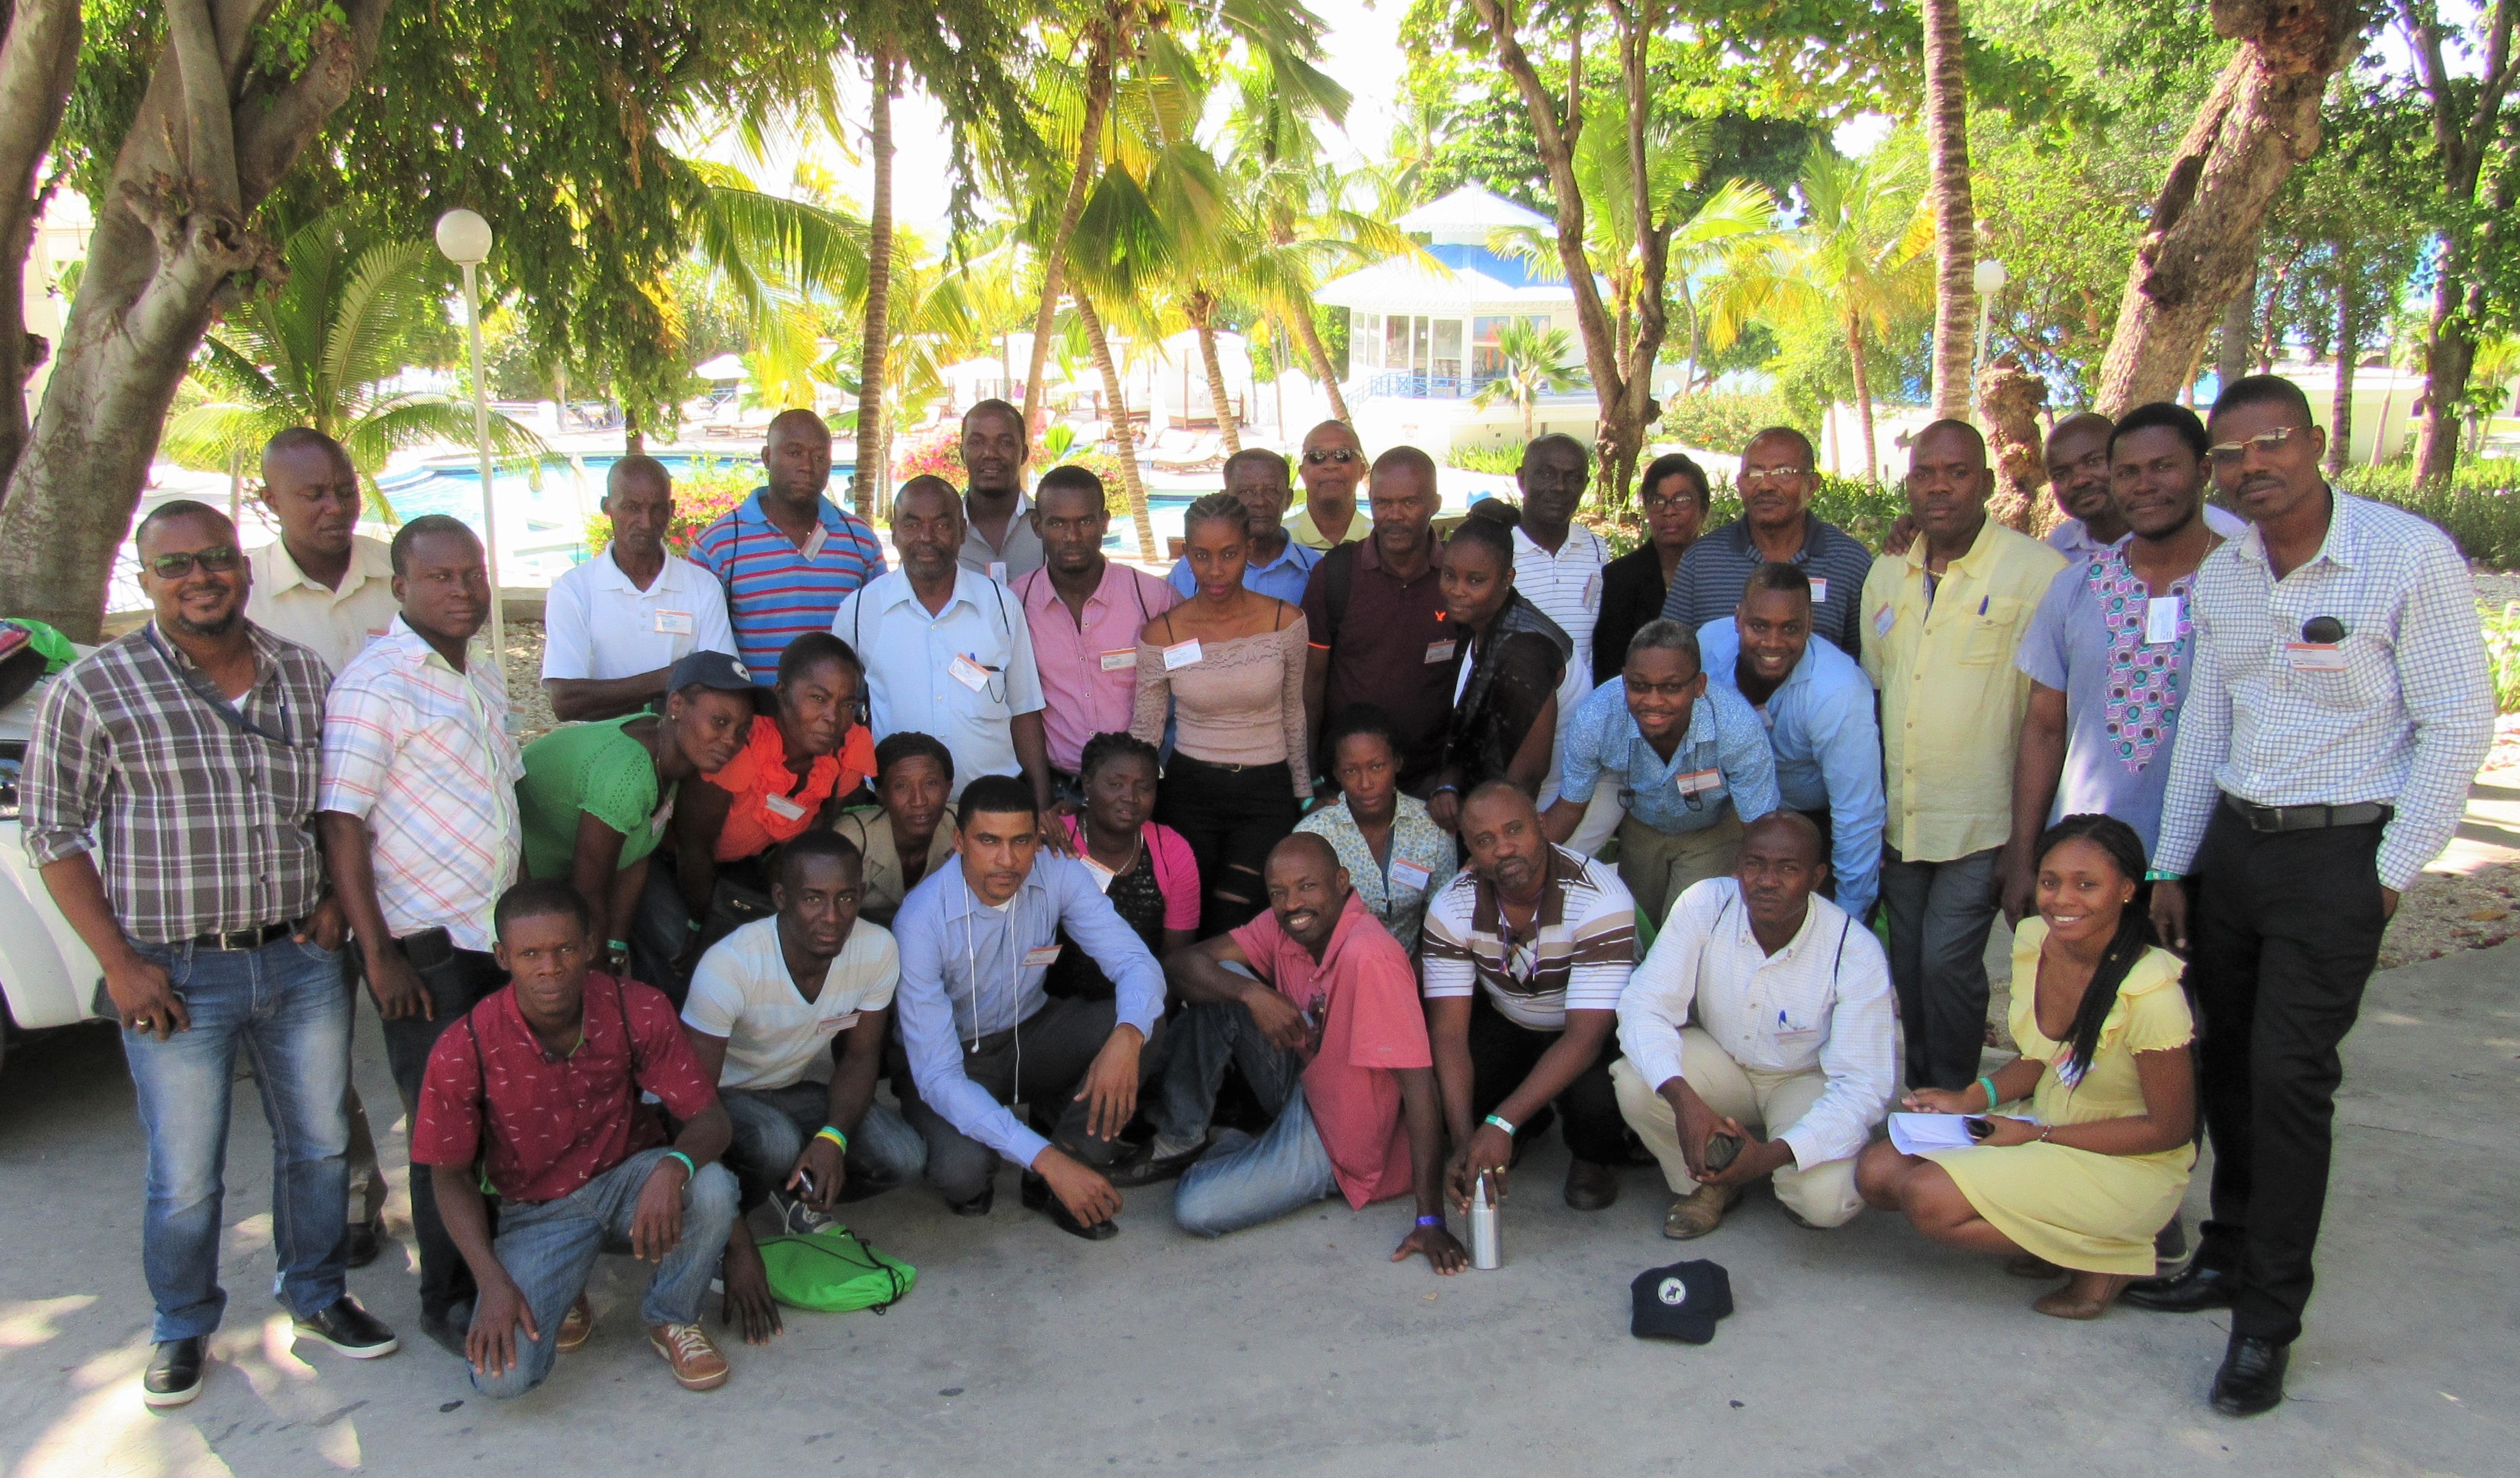 Haiti Development Institute cohort